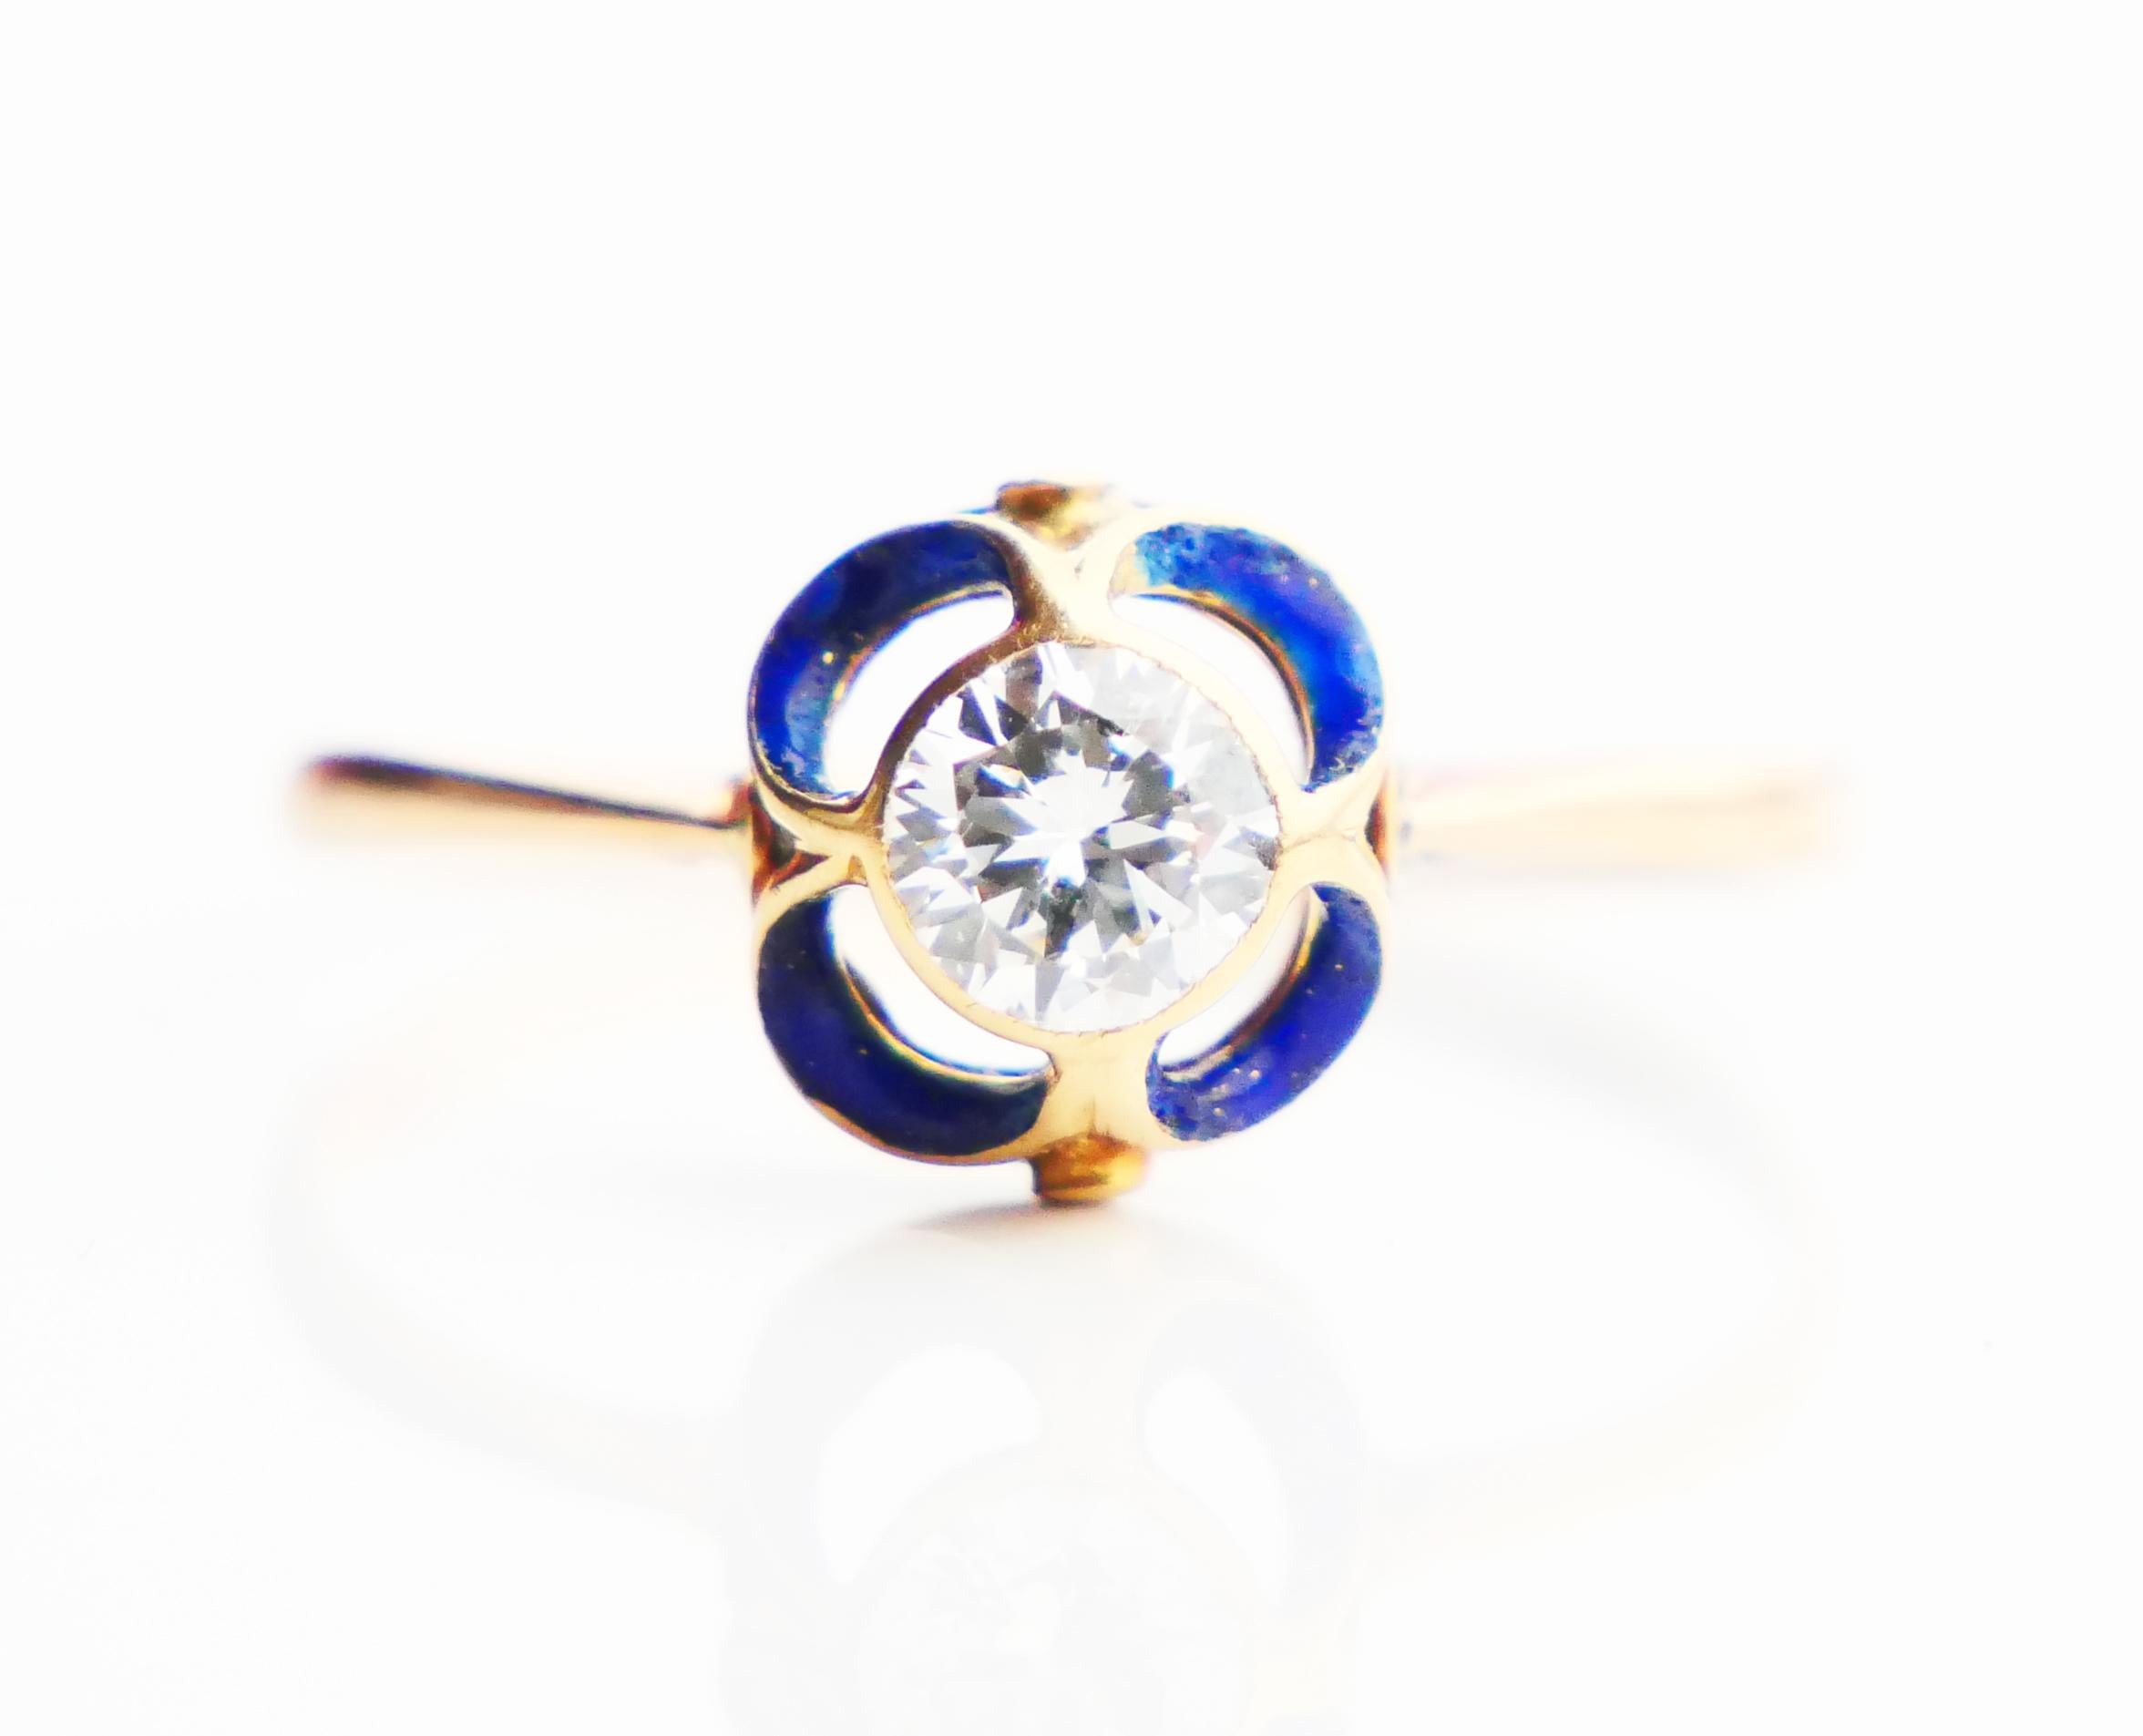 1904 Nordic Art Nouveau Ring 05ct. Diamond Blue Enamel 18K Gold ØUS9.5/2.5gr 1